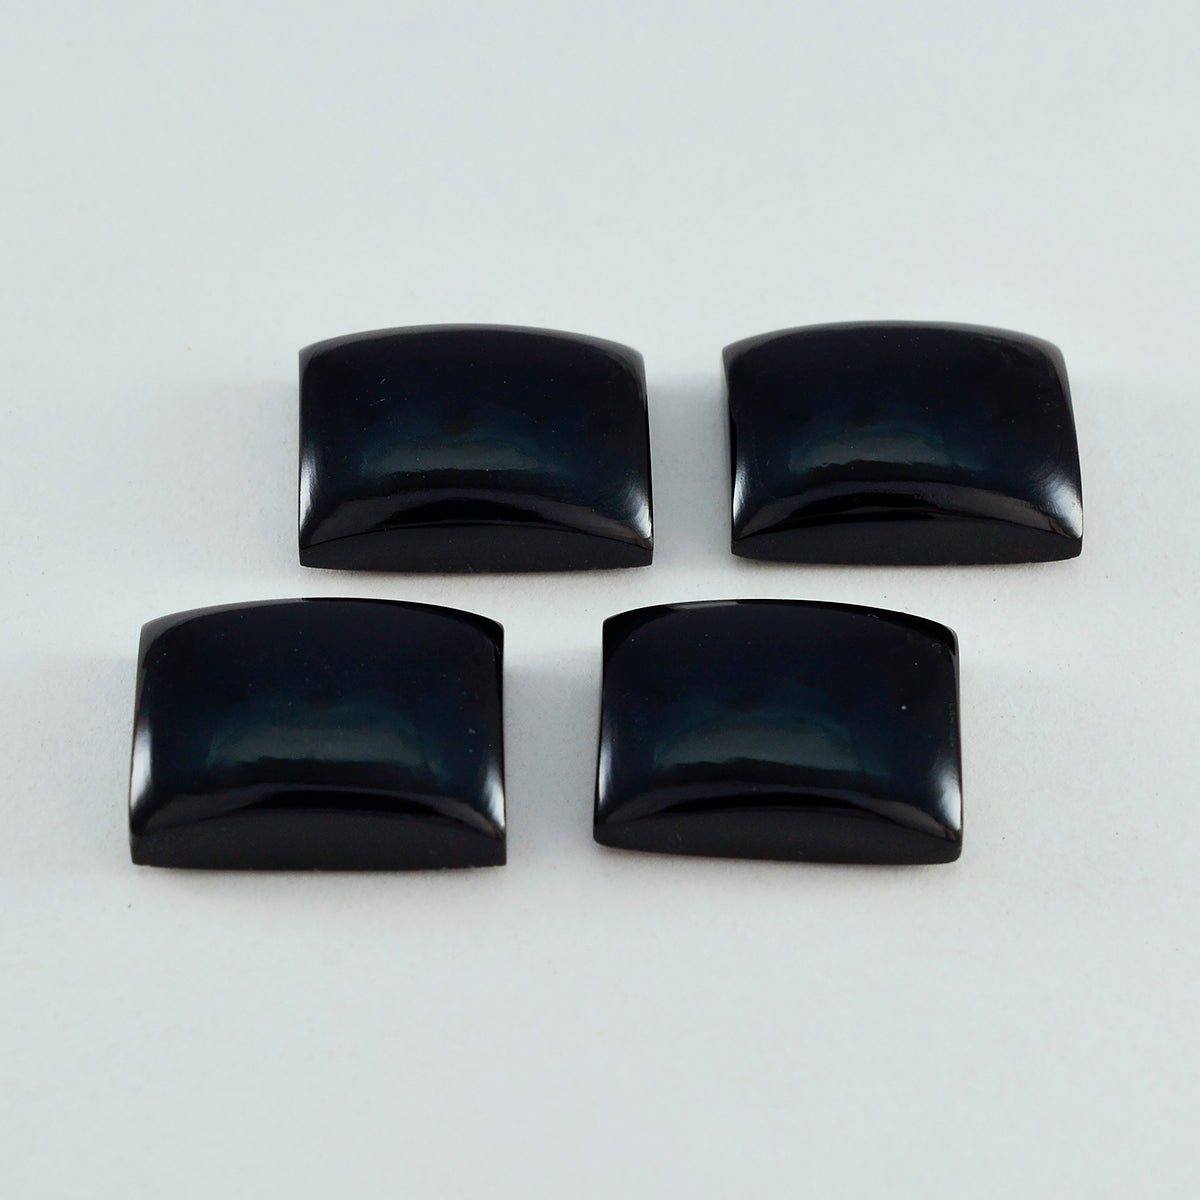 riyogems 1 шт. черный оникс кабошон 12x16 мм восьмиугольной формы, драгоценный камень отличного качества